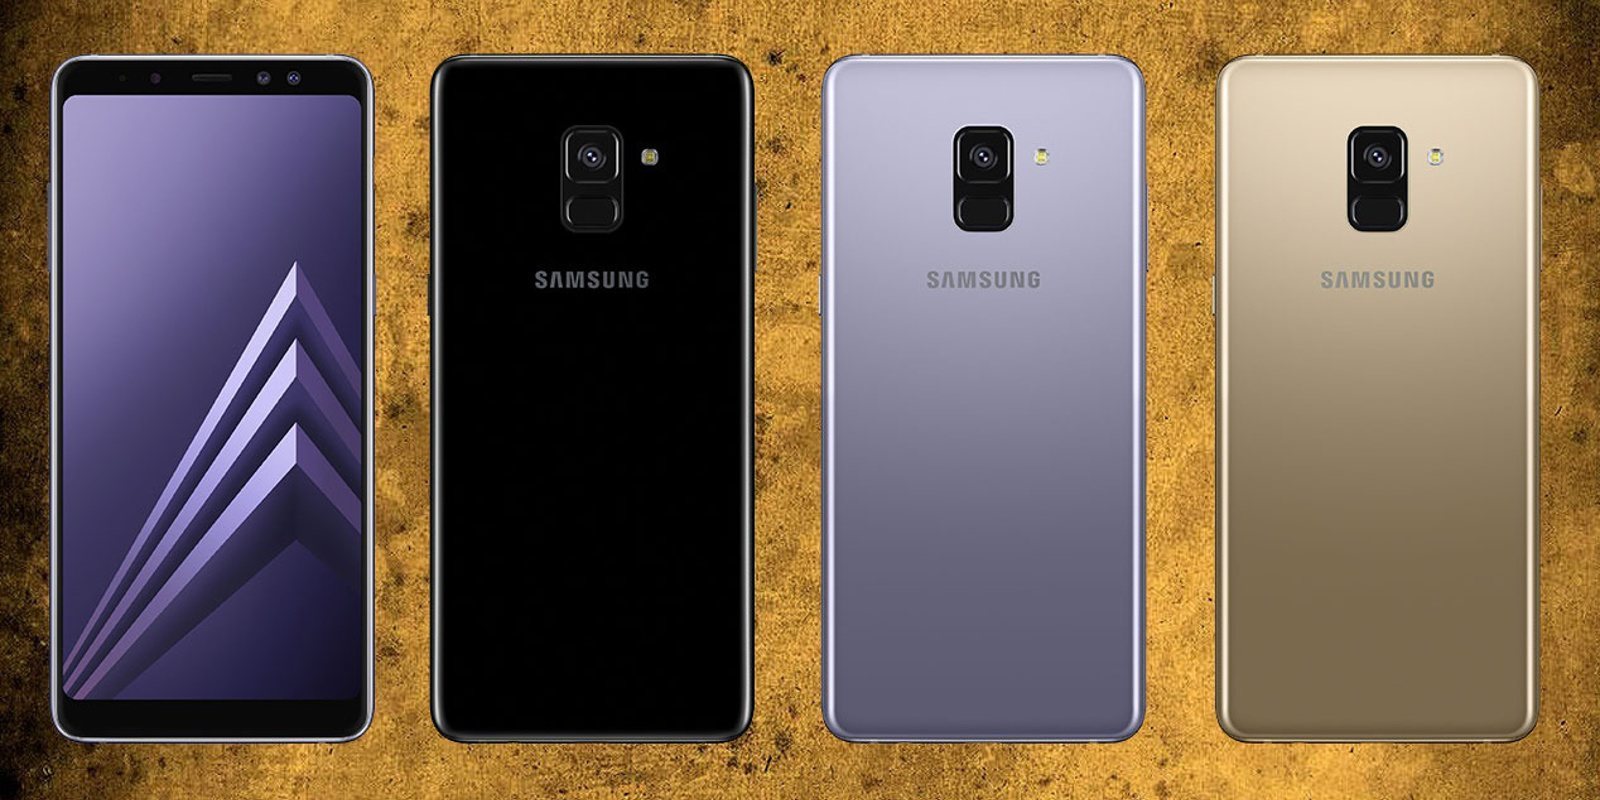 Samsung podría anunciar pronto dos nuevos smartphones: Galaxy A6 y Galaxy A6+